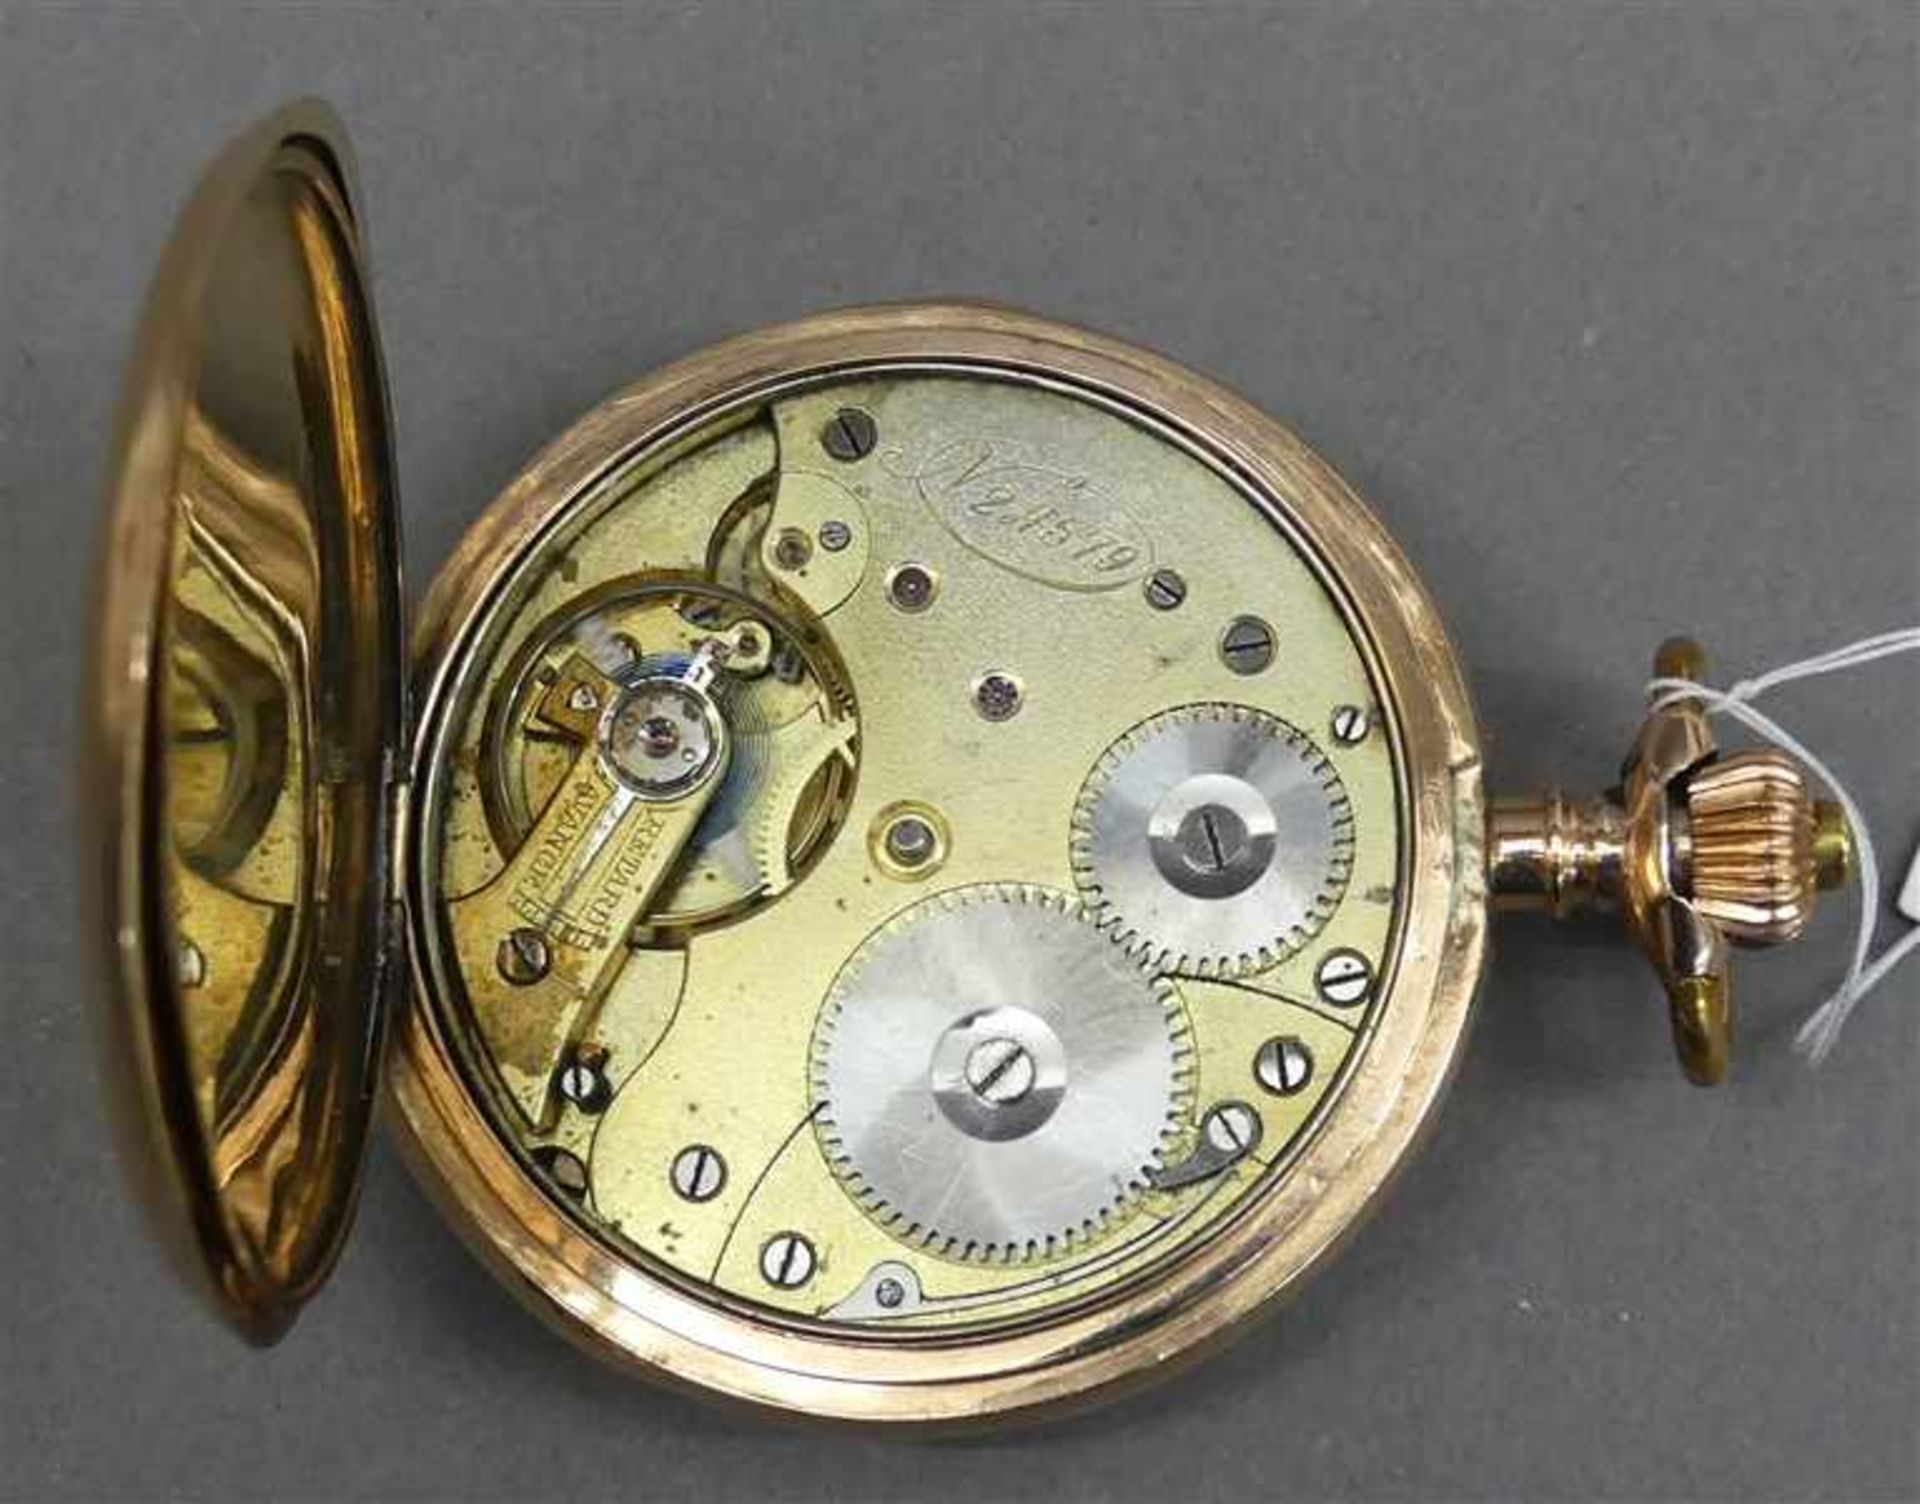 Sprungdeckeltaschenuhr14 kt. Rotgold, "Systeme Glashütte", Kronenaufzug, aufgelegtes Monogramm, - Bild 2 aus 2